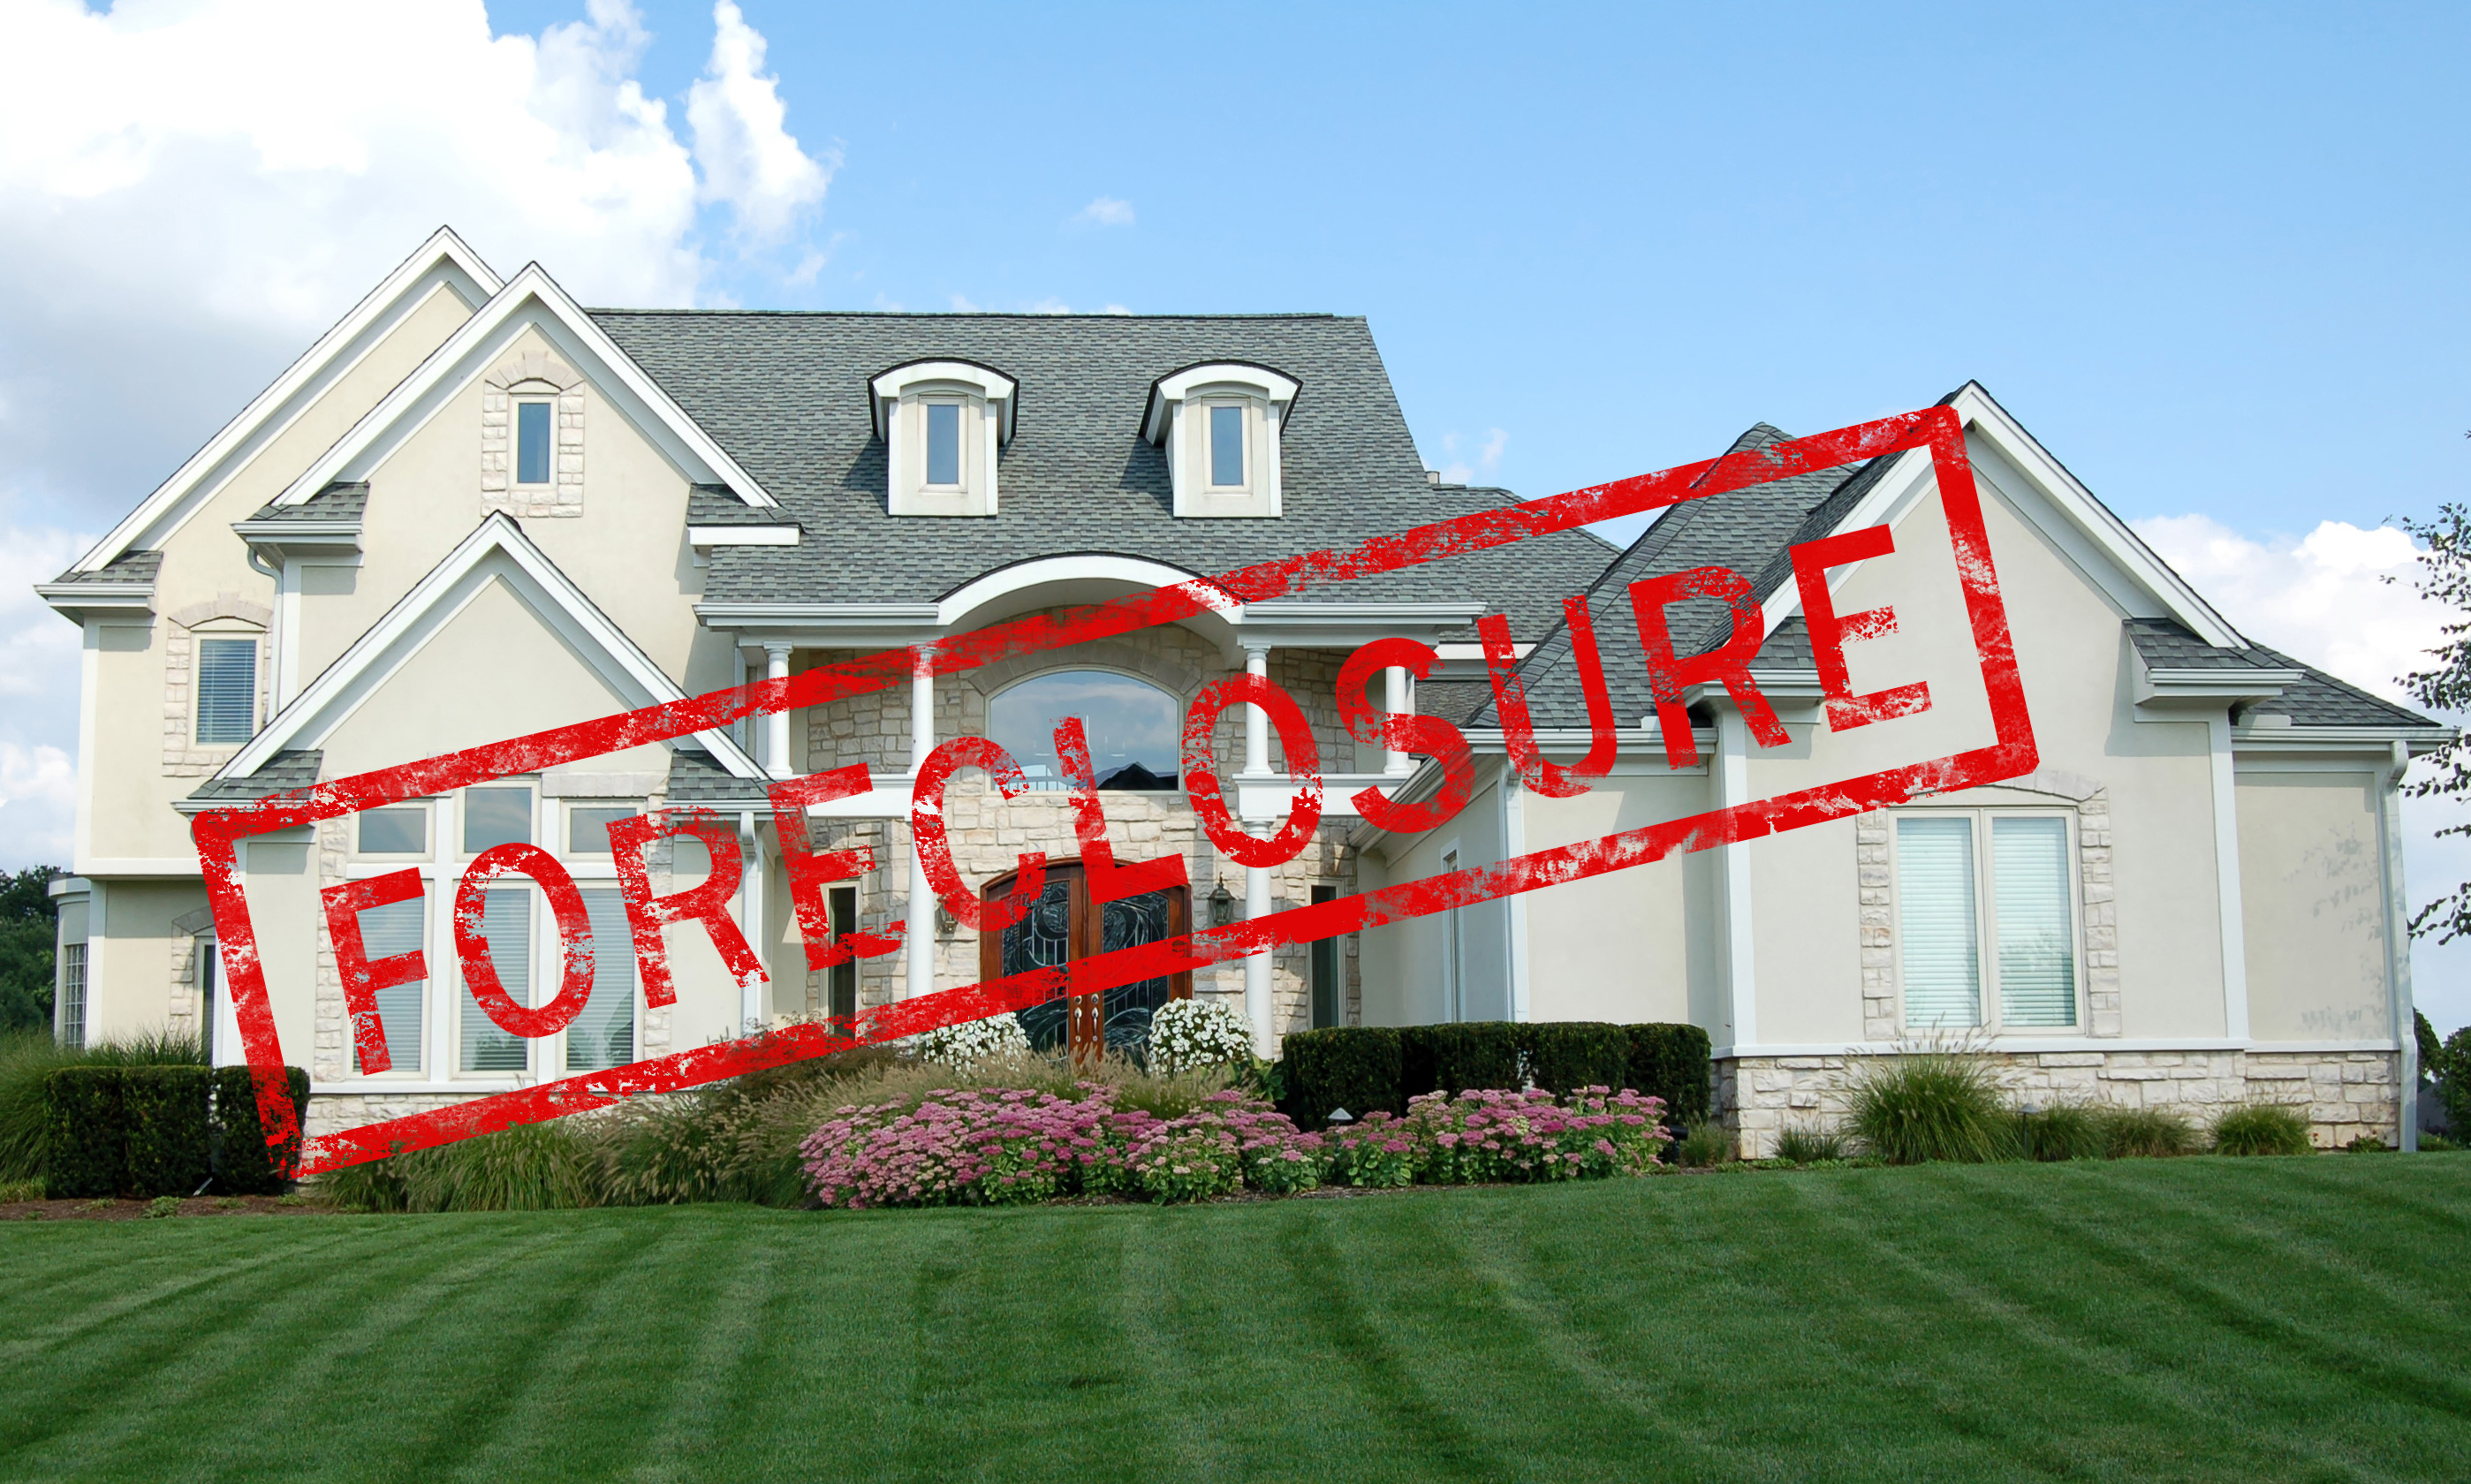 Call Deer Creek Appraisals when you need appraisals regarding Jefferson foreclosures